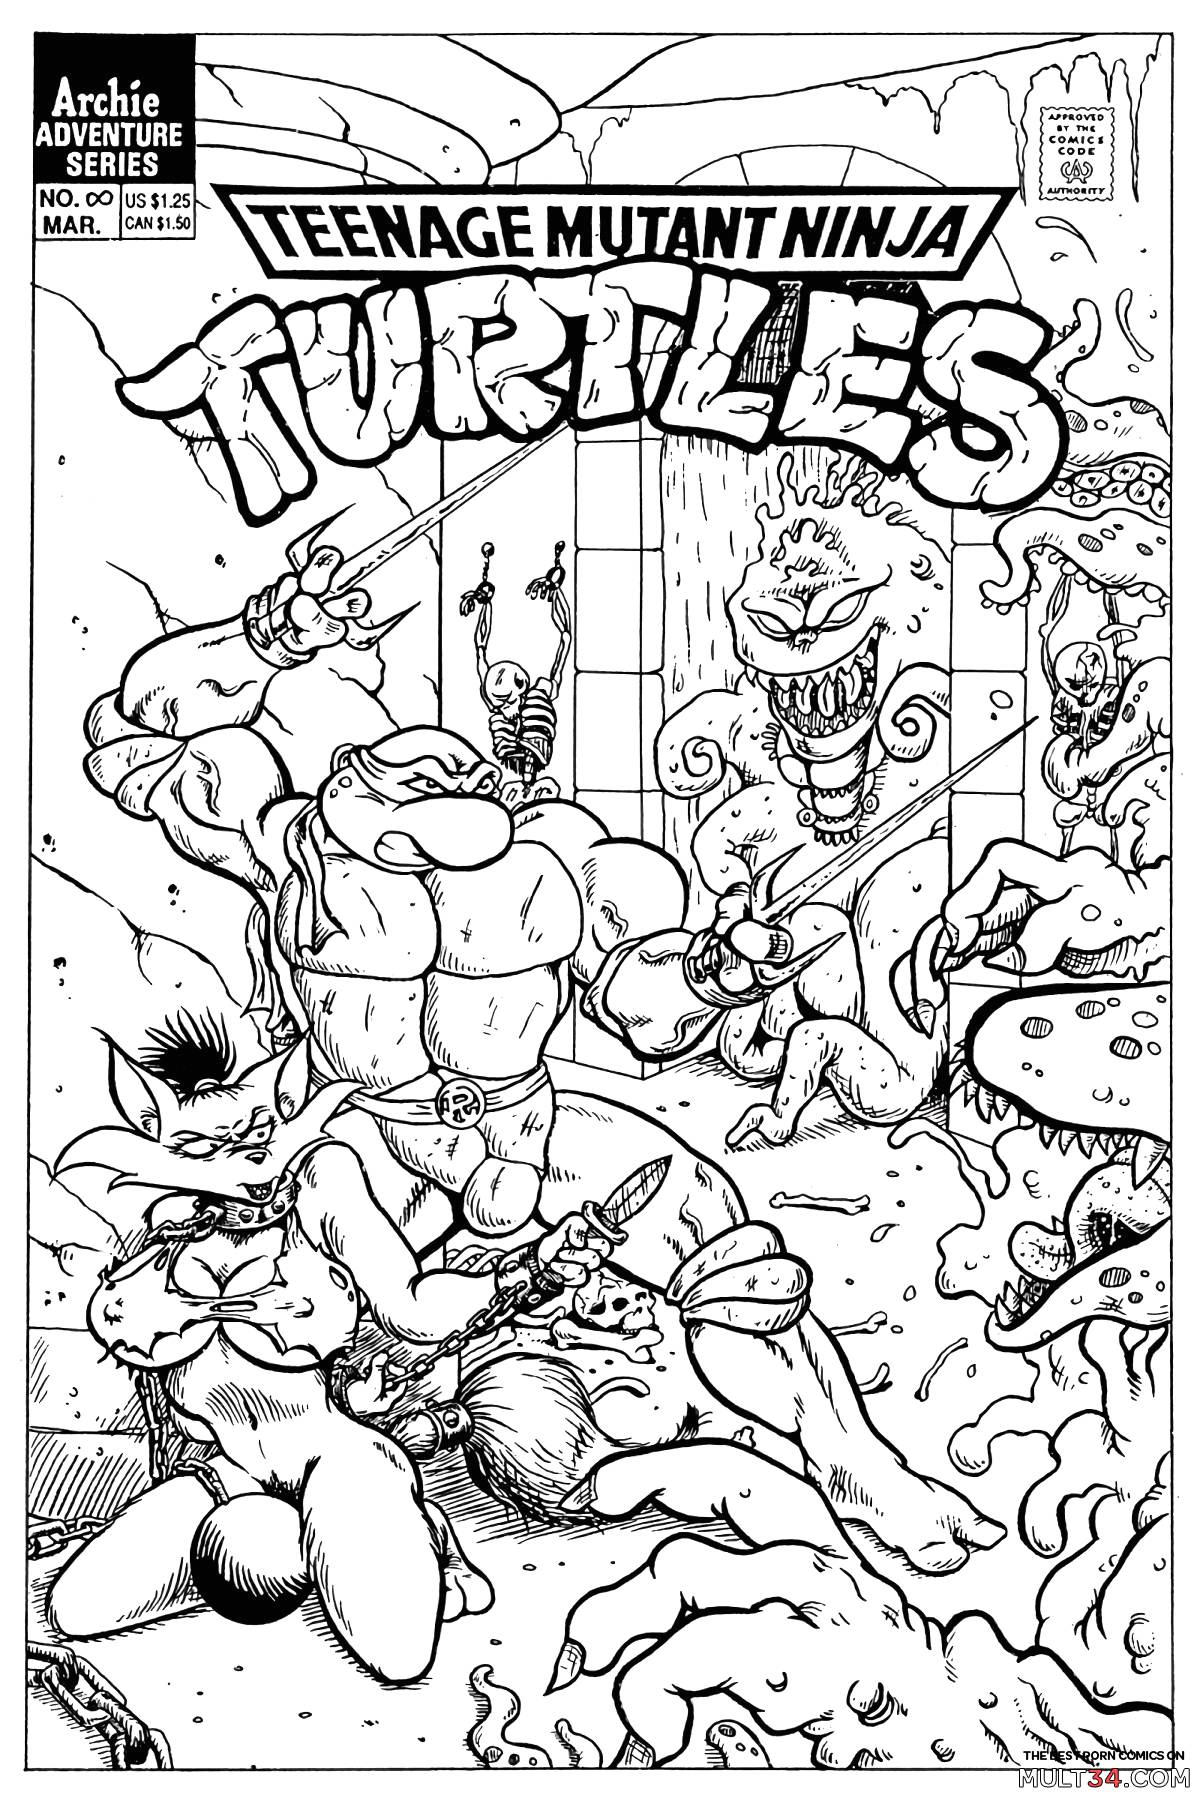 Teenage mutant ninja turtles gay porn comic